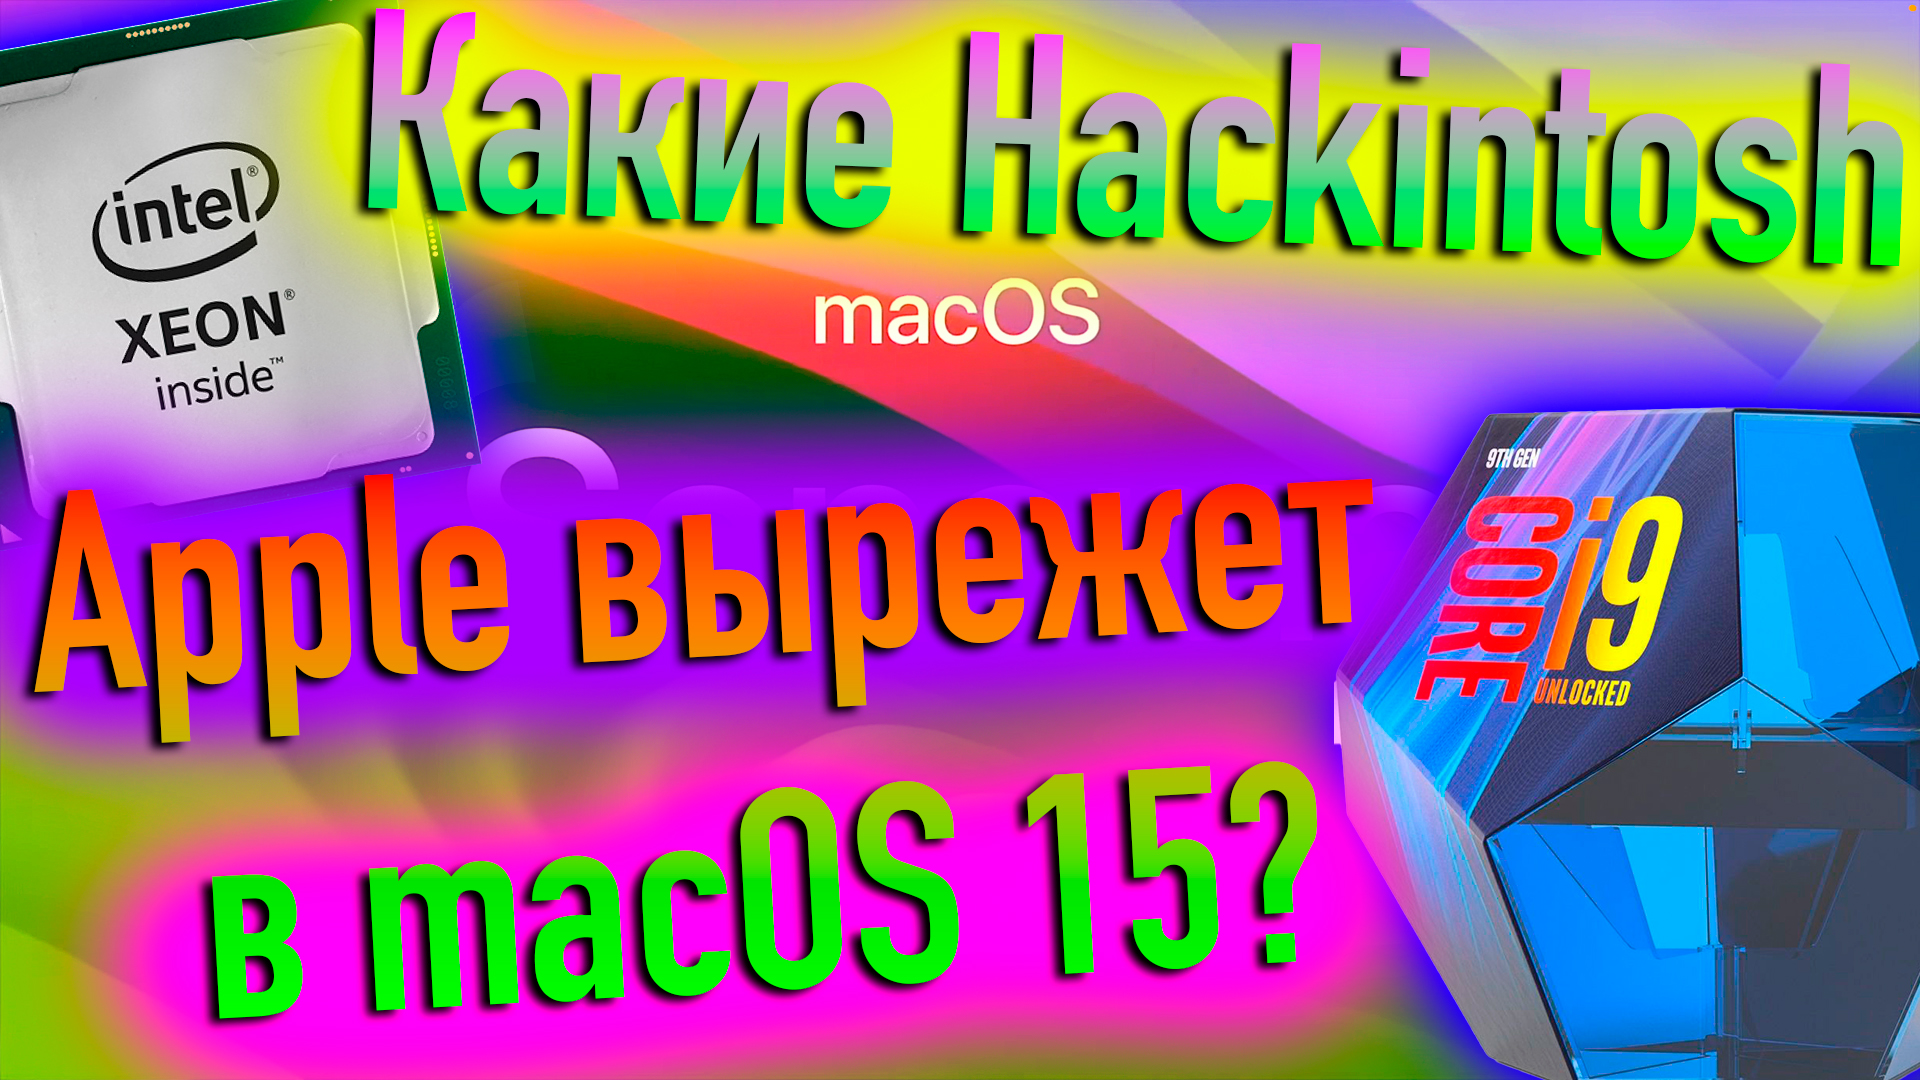 КАКИЕ HACKINTOSH APPLE ВЫРЕЖЕТ В MACOS 15?! - ALEXEY BORONENKOV | 4K